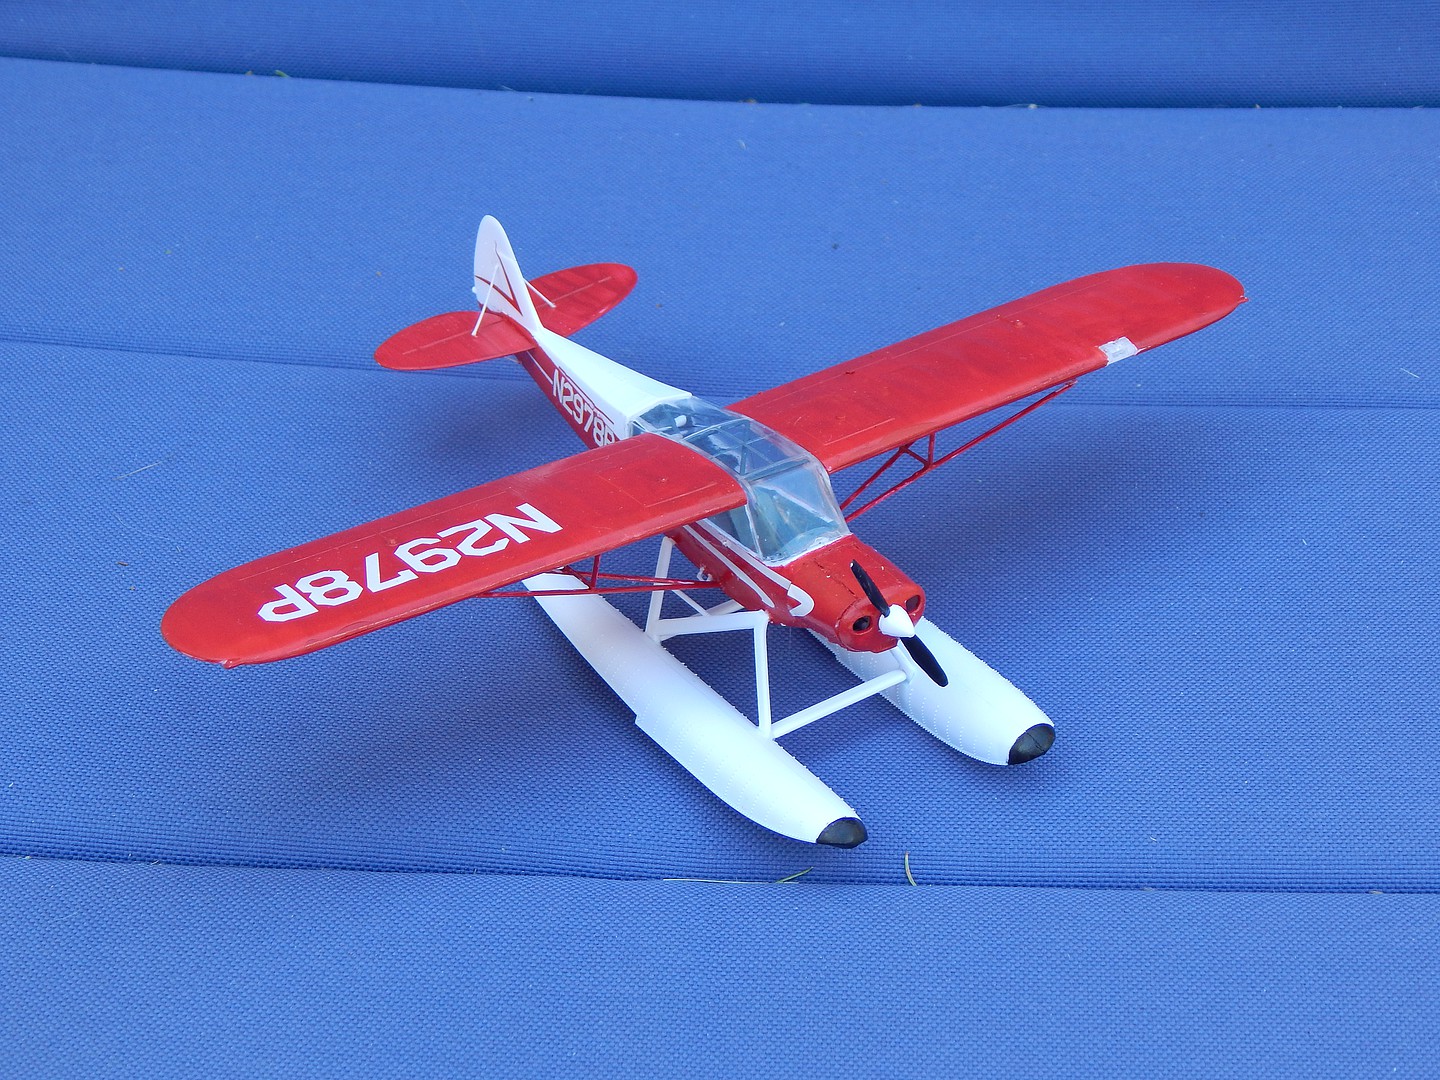 1/48 Scale Minicraft Piper Super Cub Airplane Model Kit 